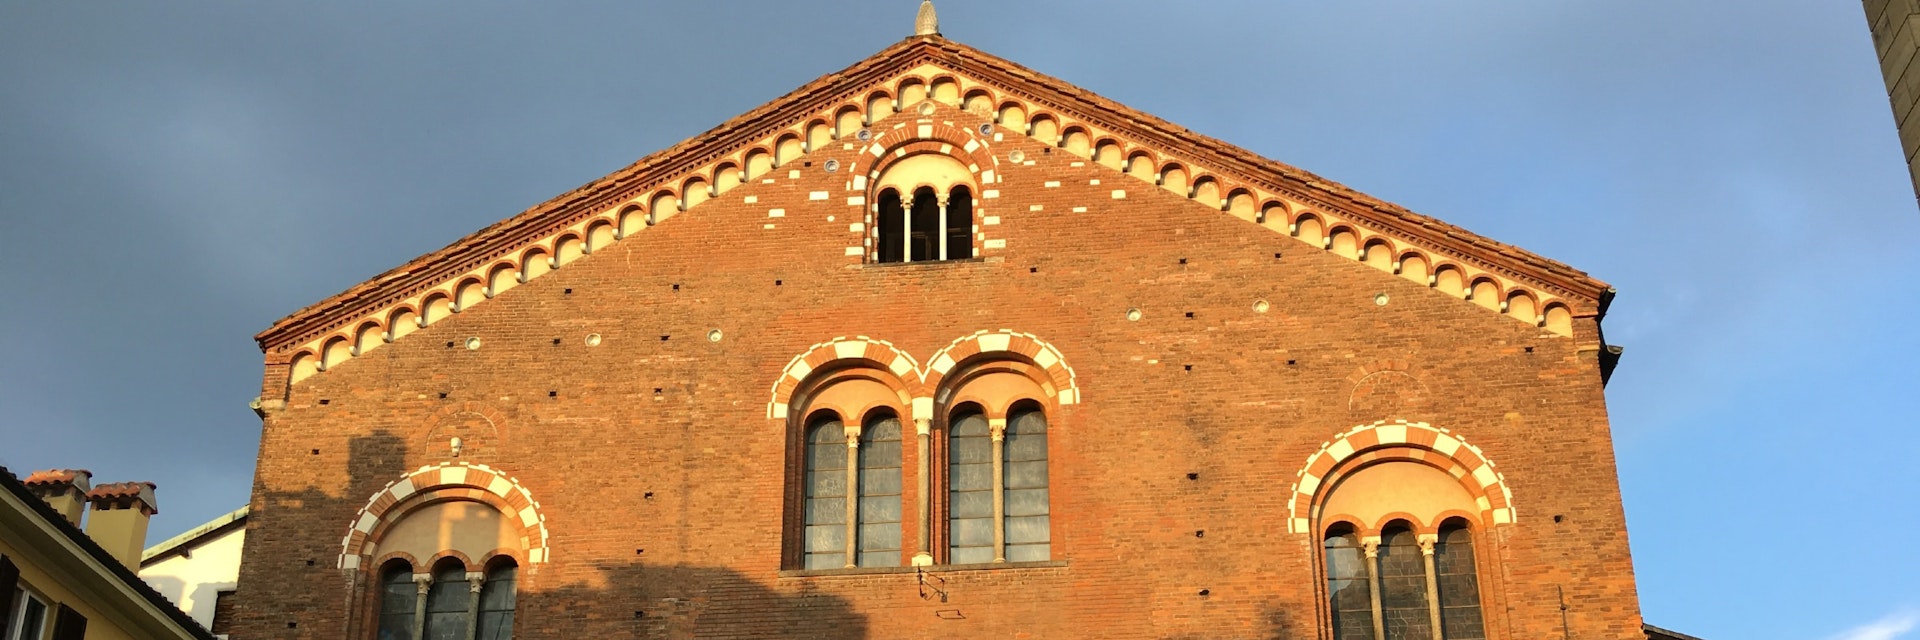 Basilica di San Simpliciano exterior